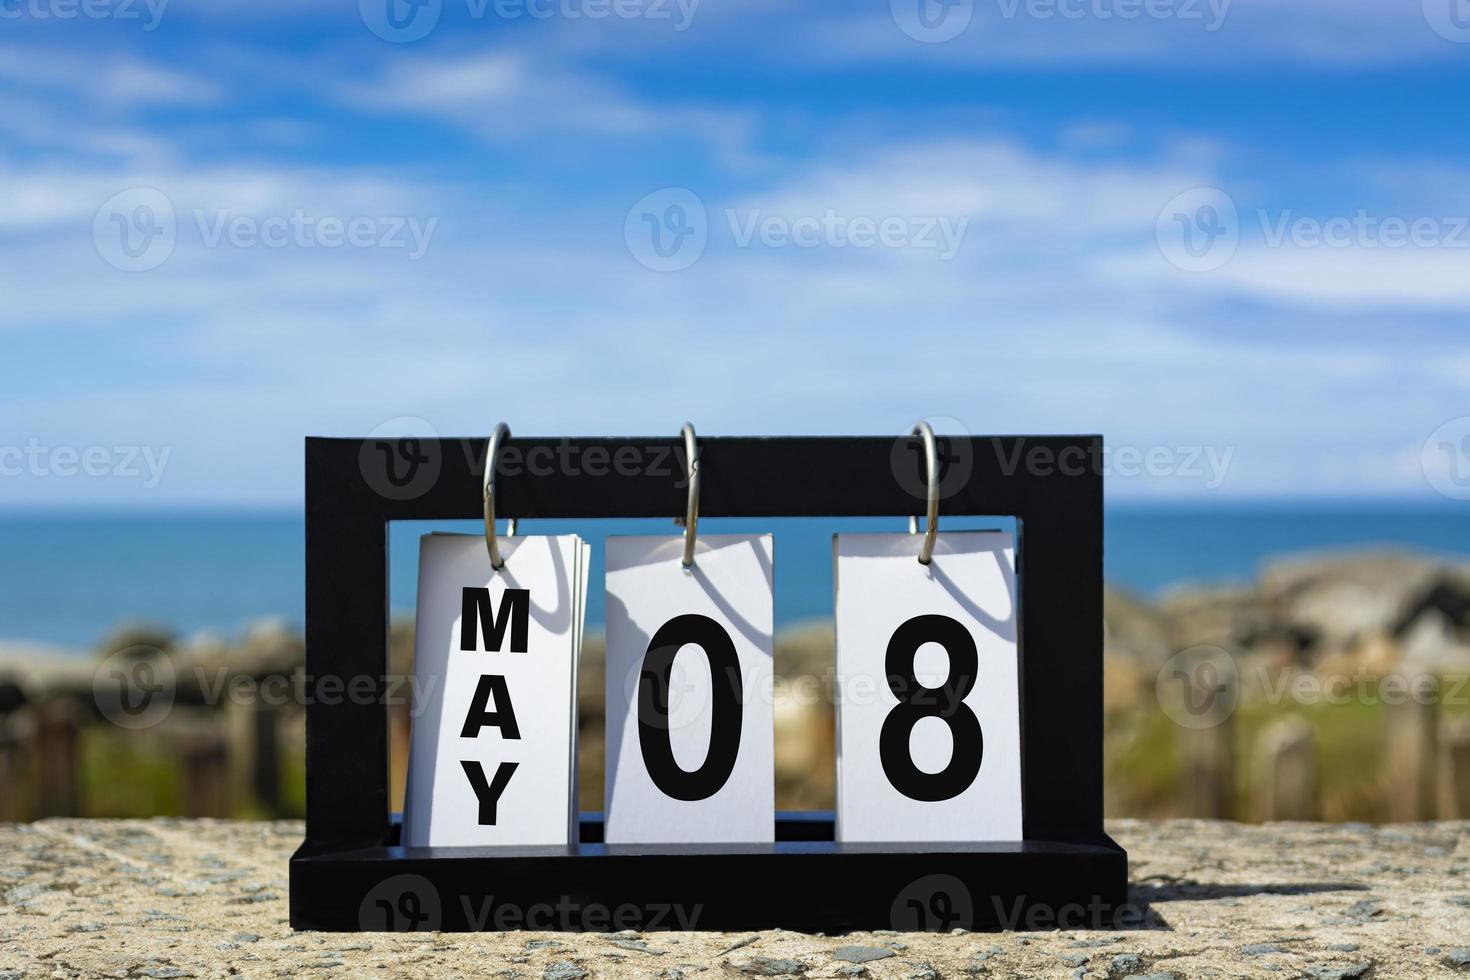 Mai 08 Kalenderdatumstext auf Holzrahmen mit verschwommenem Hintergrund des Ozeans. foto